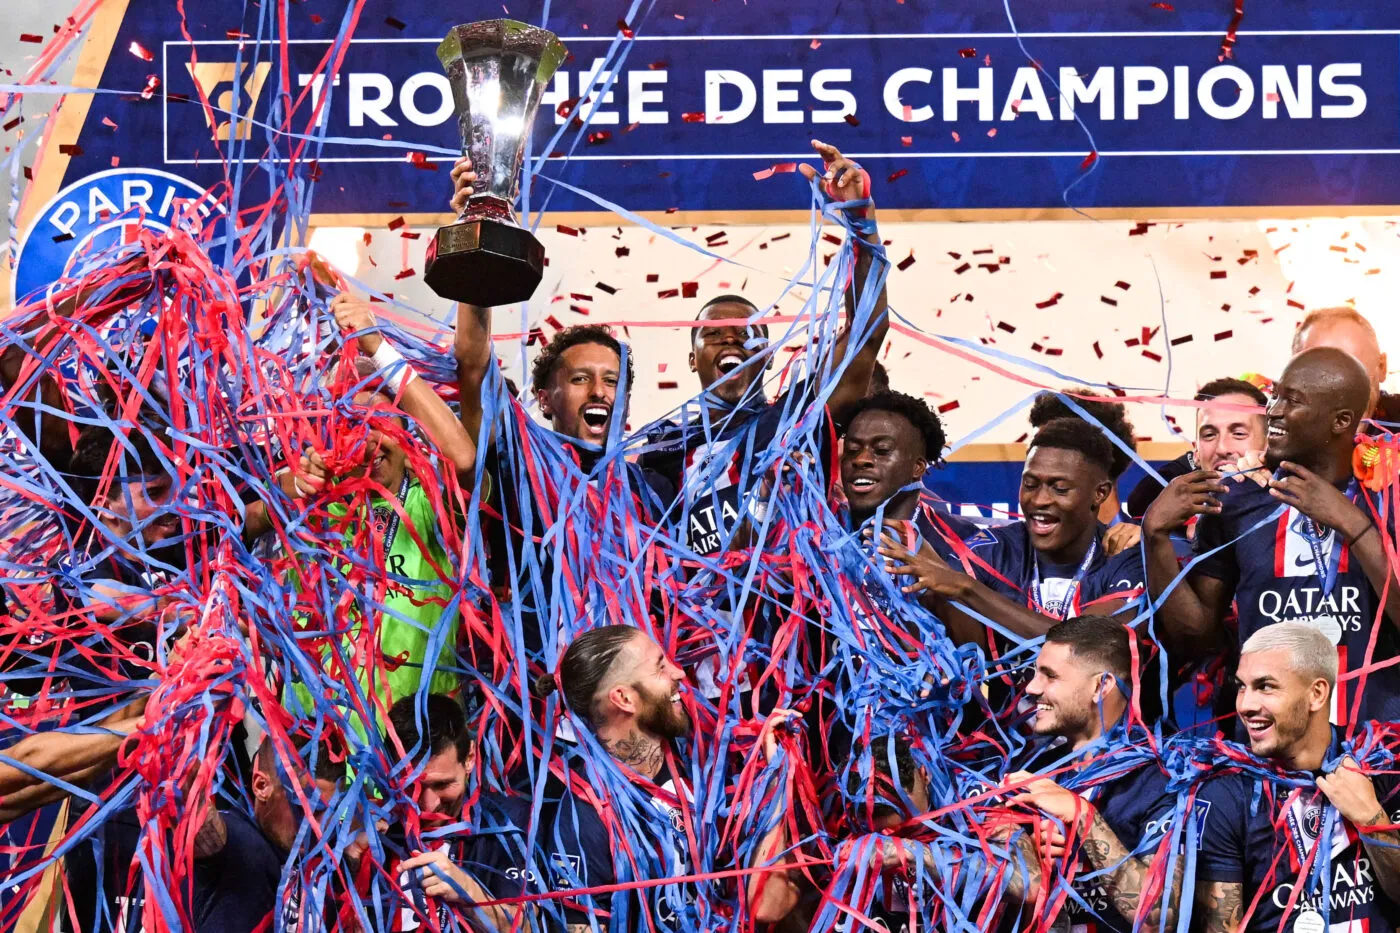 Le retour du Trophée des champions en France ?